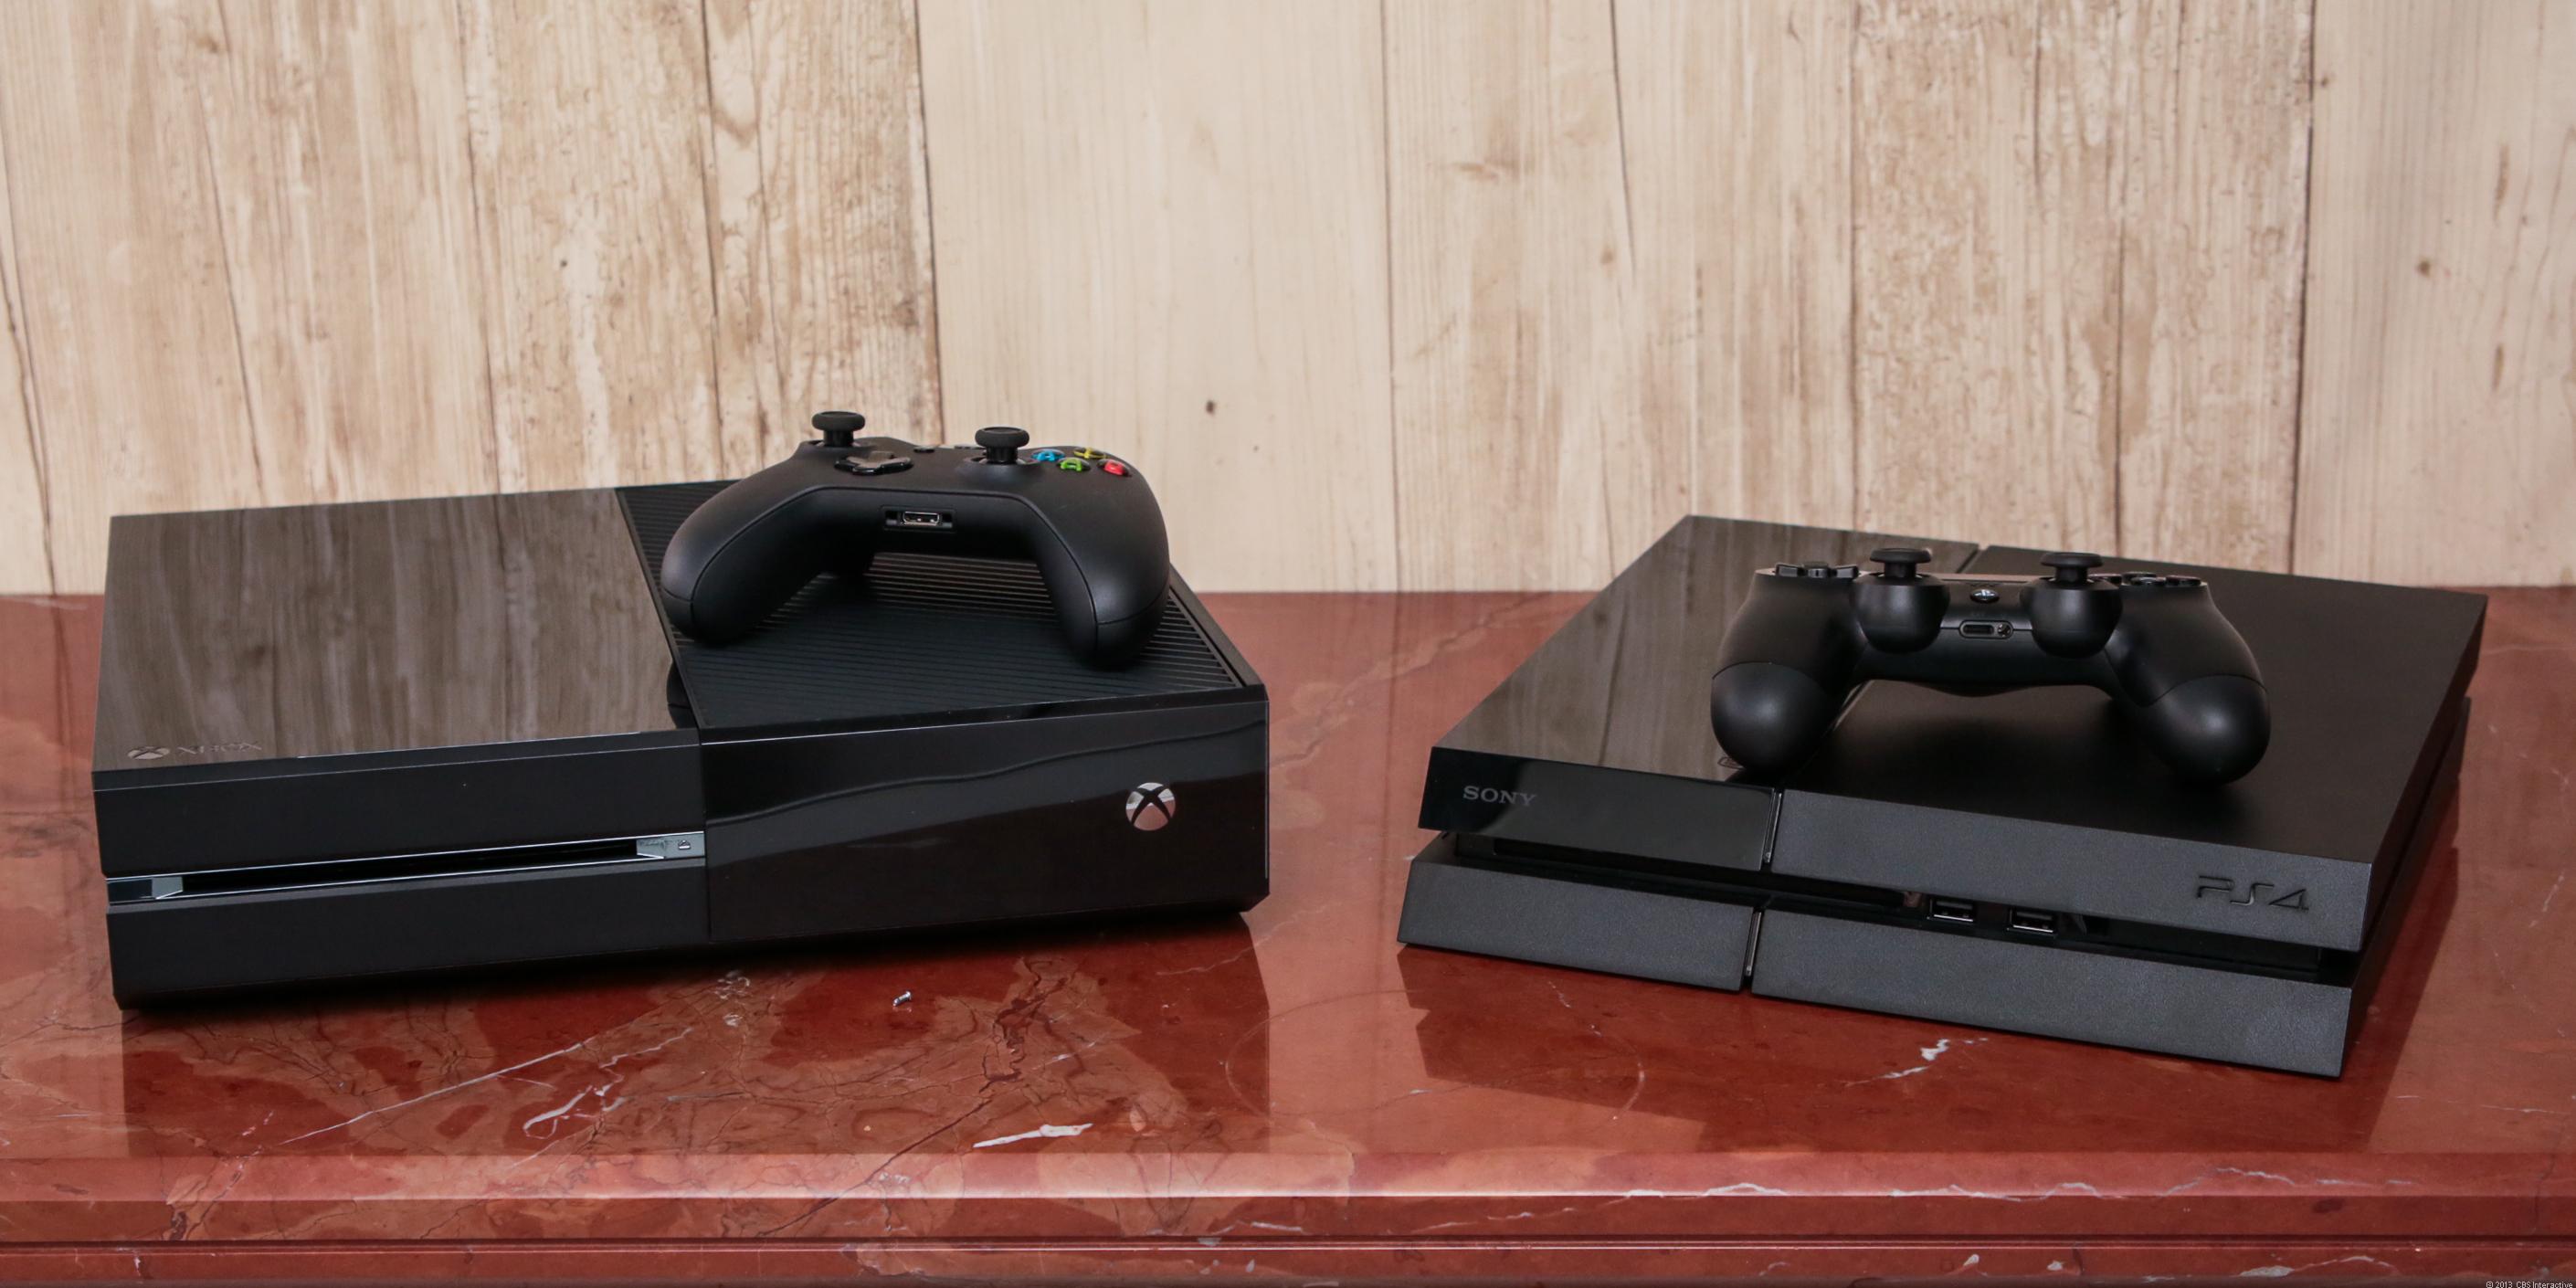 Uji Banting Xbox One Vs PS4, Siapakah yang Lebih Kuat?